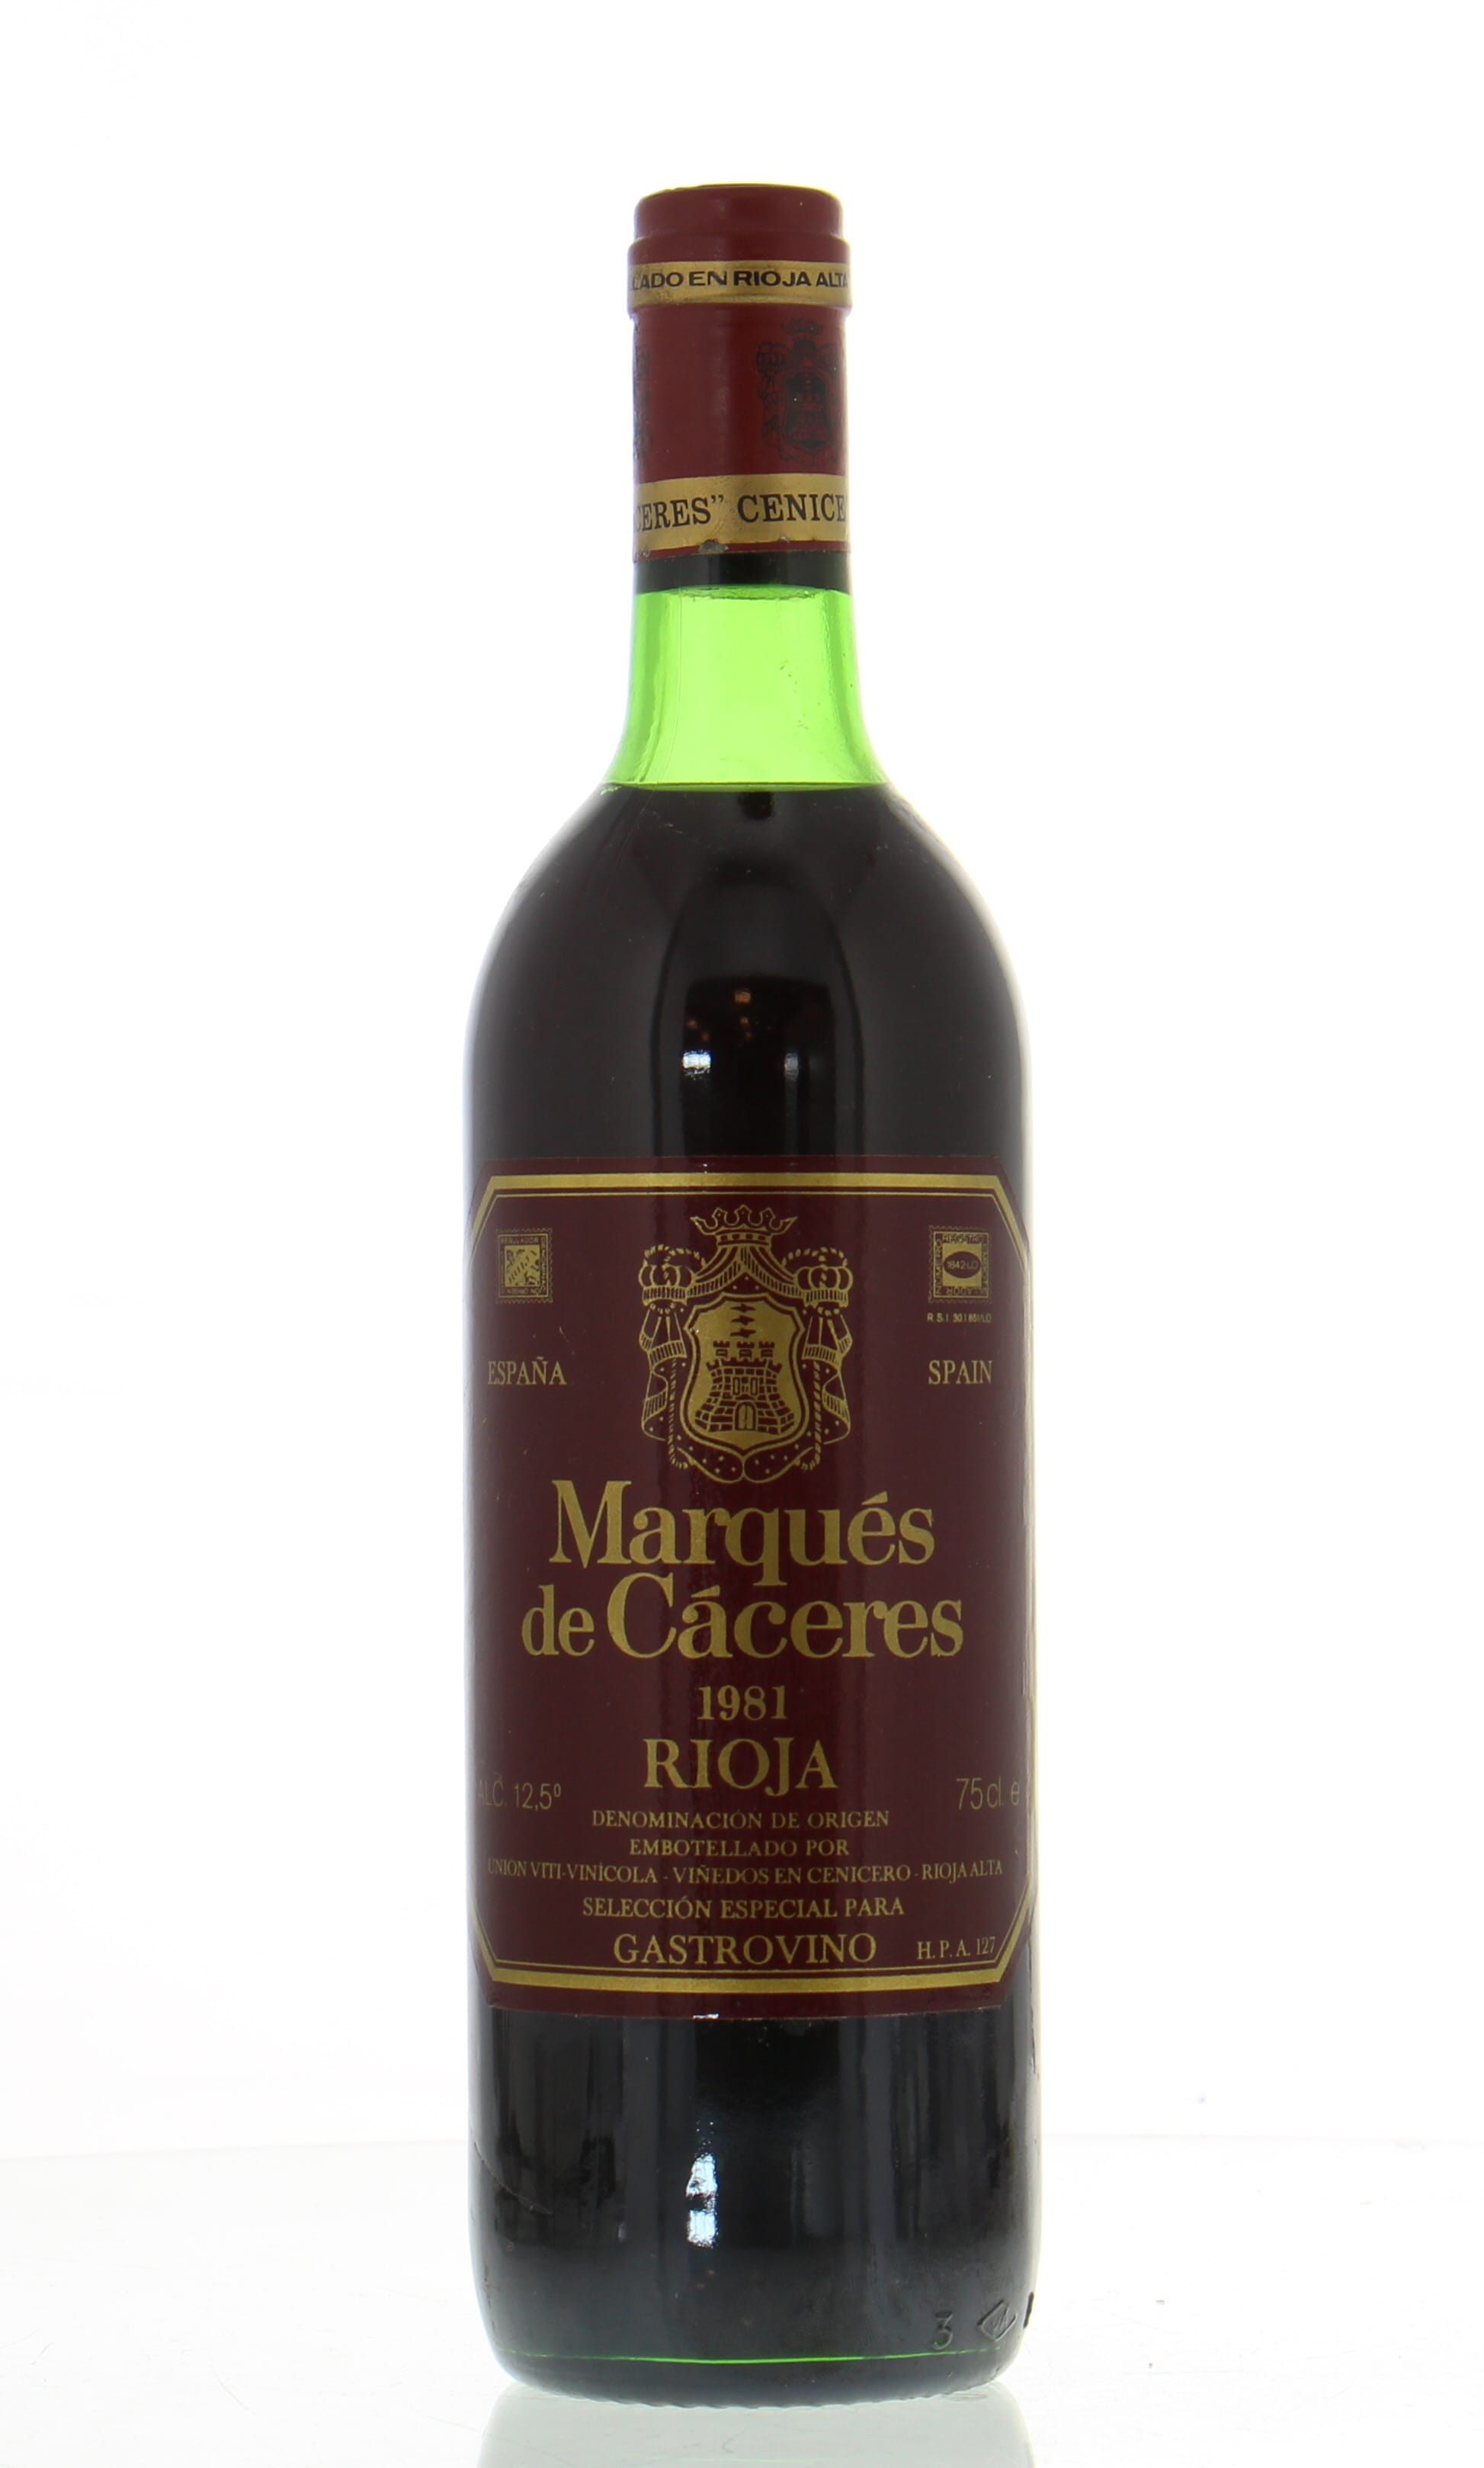 Marques de Caceres - Rioja 1981 Perfect